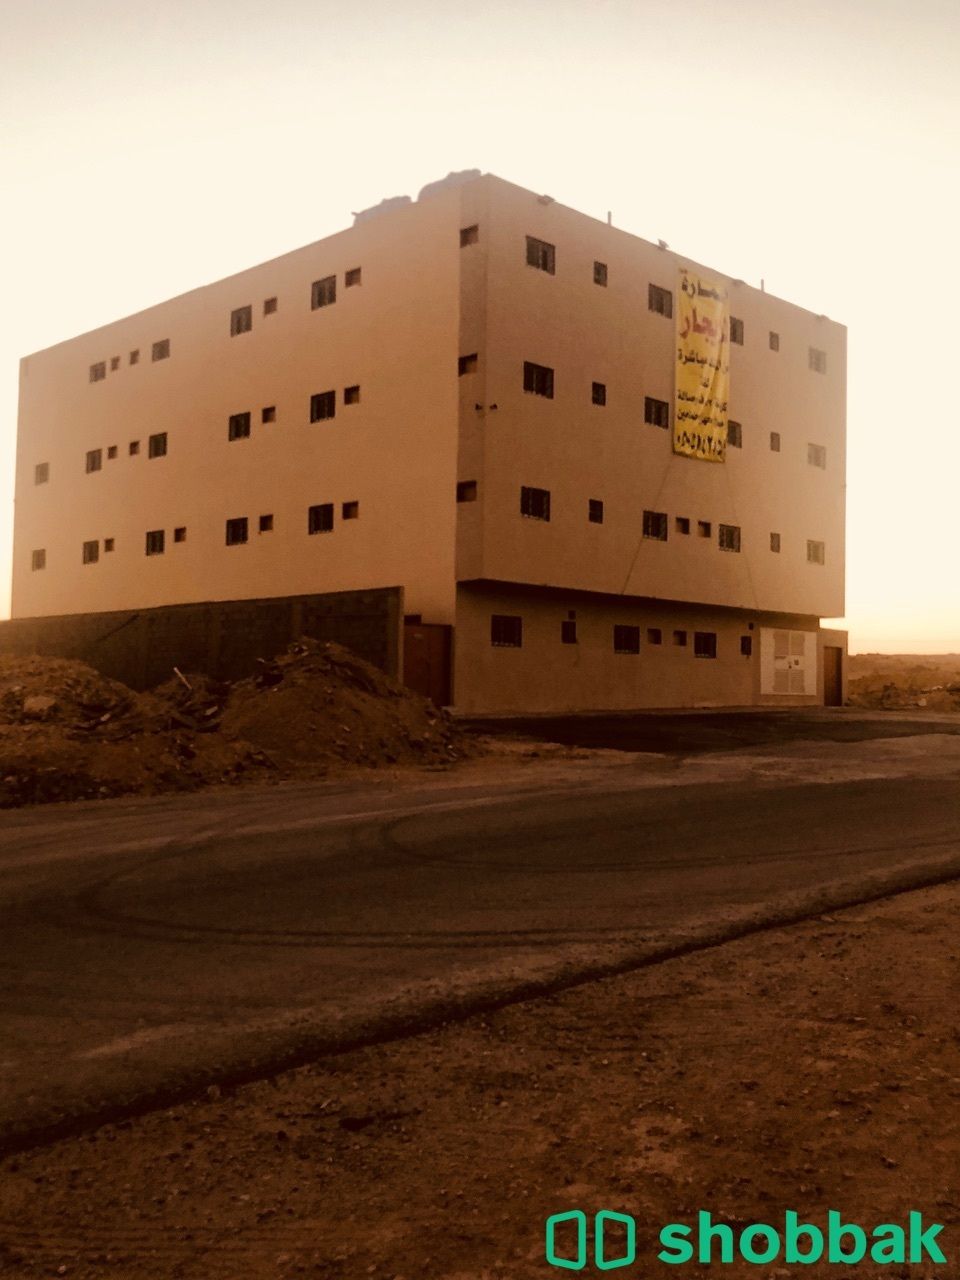 عمارة سكن عمال للإجار  الرياض حي المصفاة  Shobbak Saudi Arabia